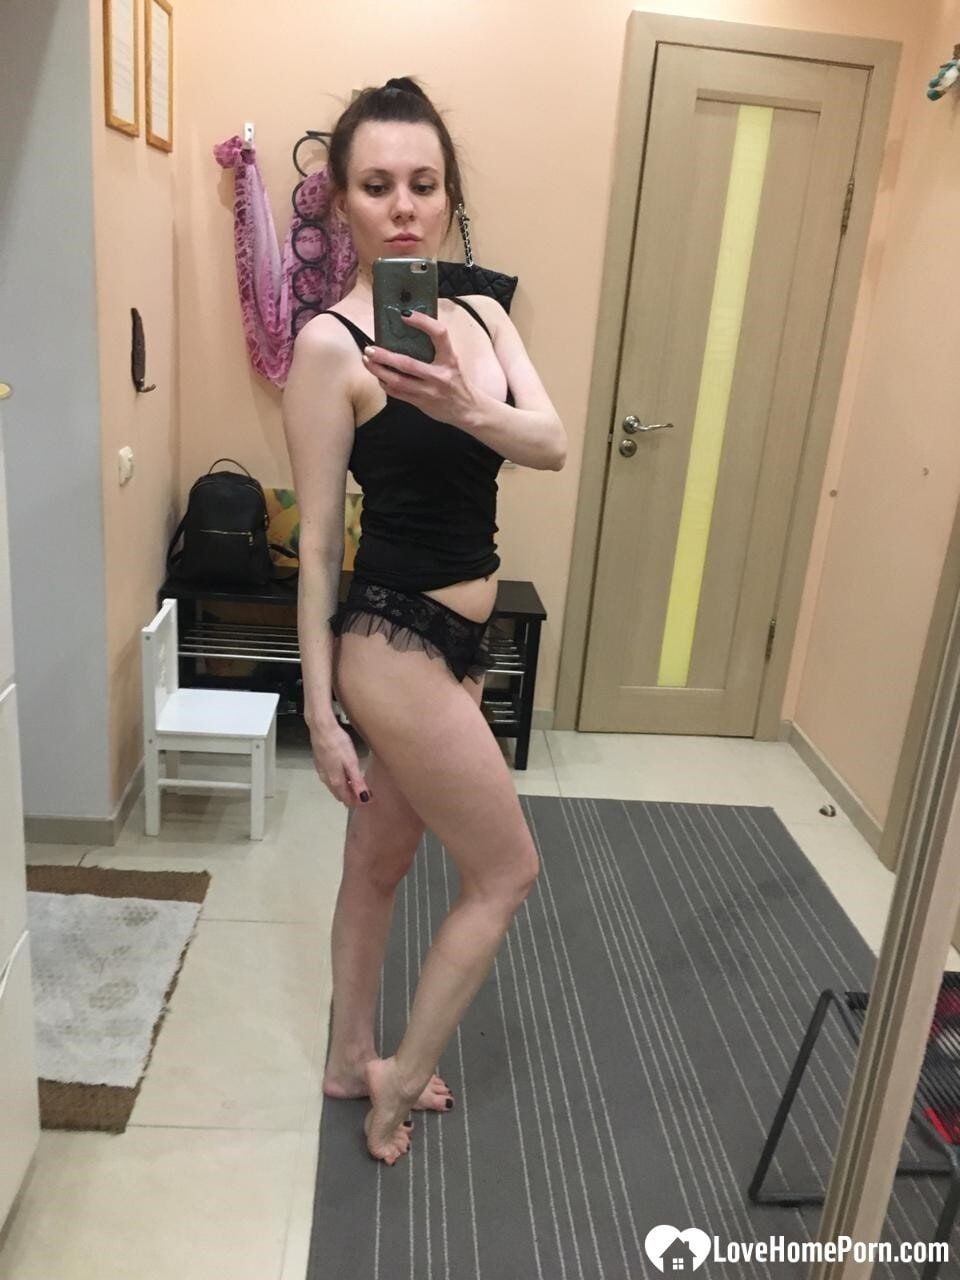 Sexy mirror selfies in my favorite lingerie #25